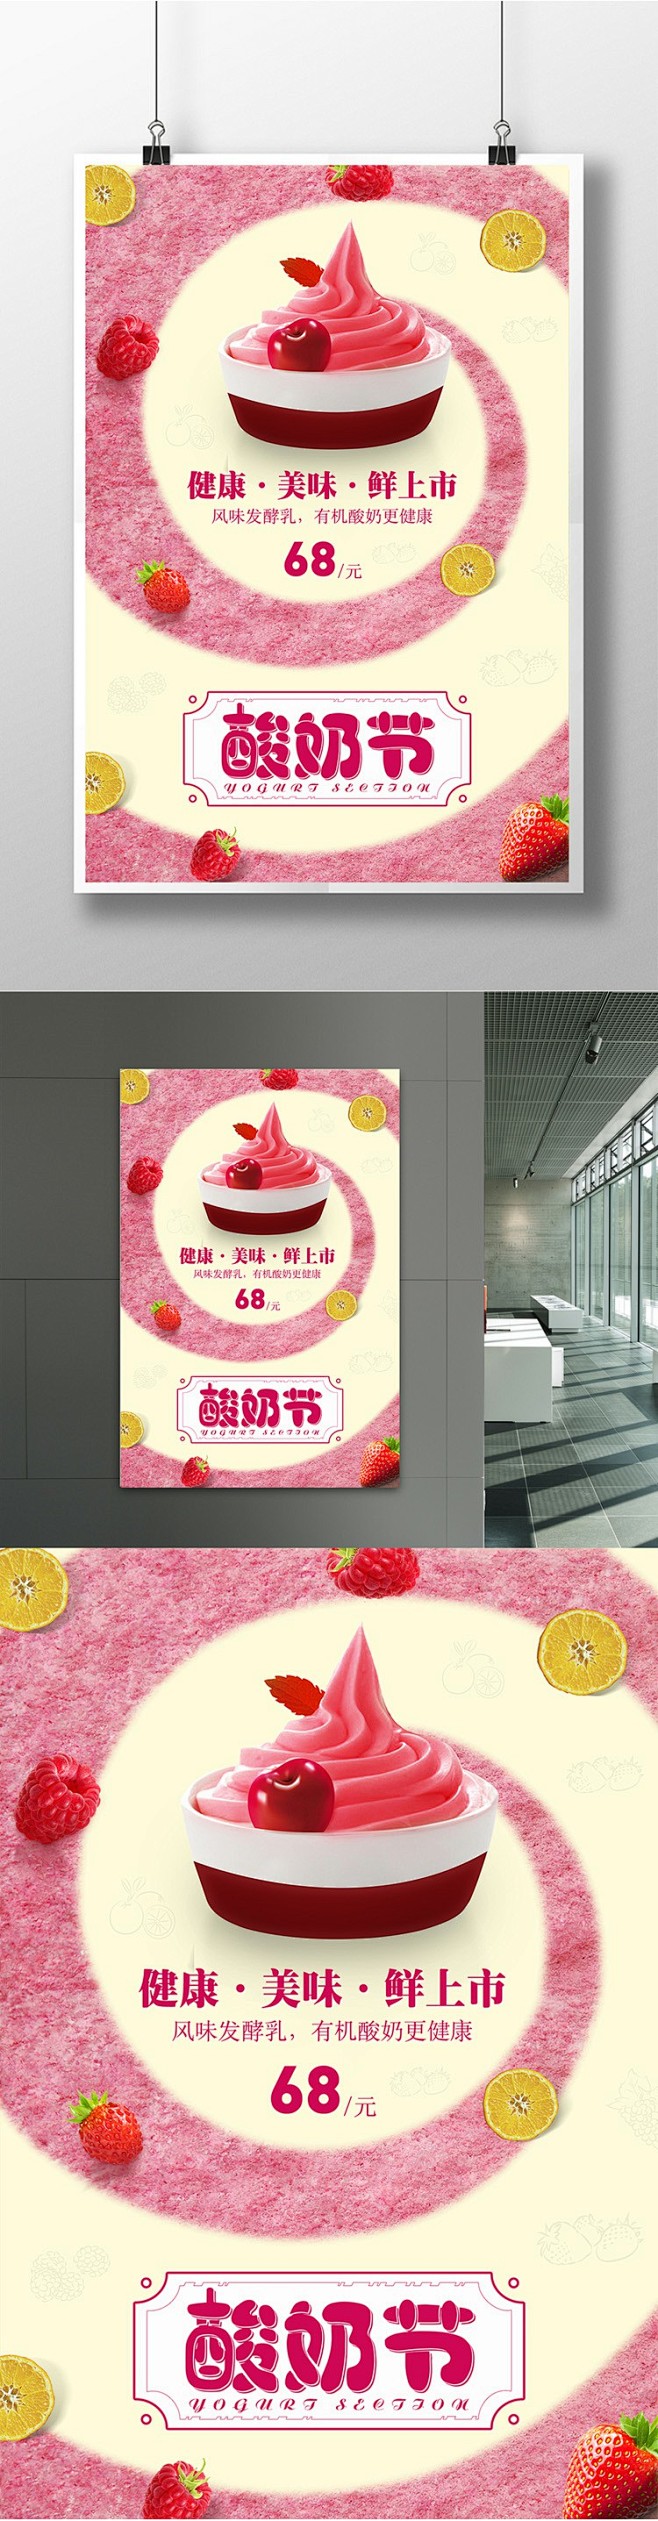 可爱清新风酸奶海报粉色 酸奶海报 酸奶展...